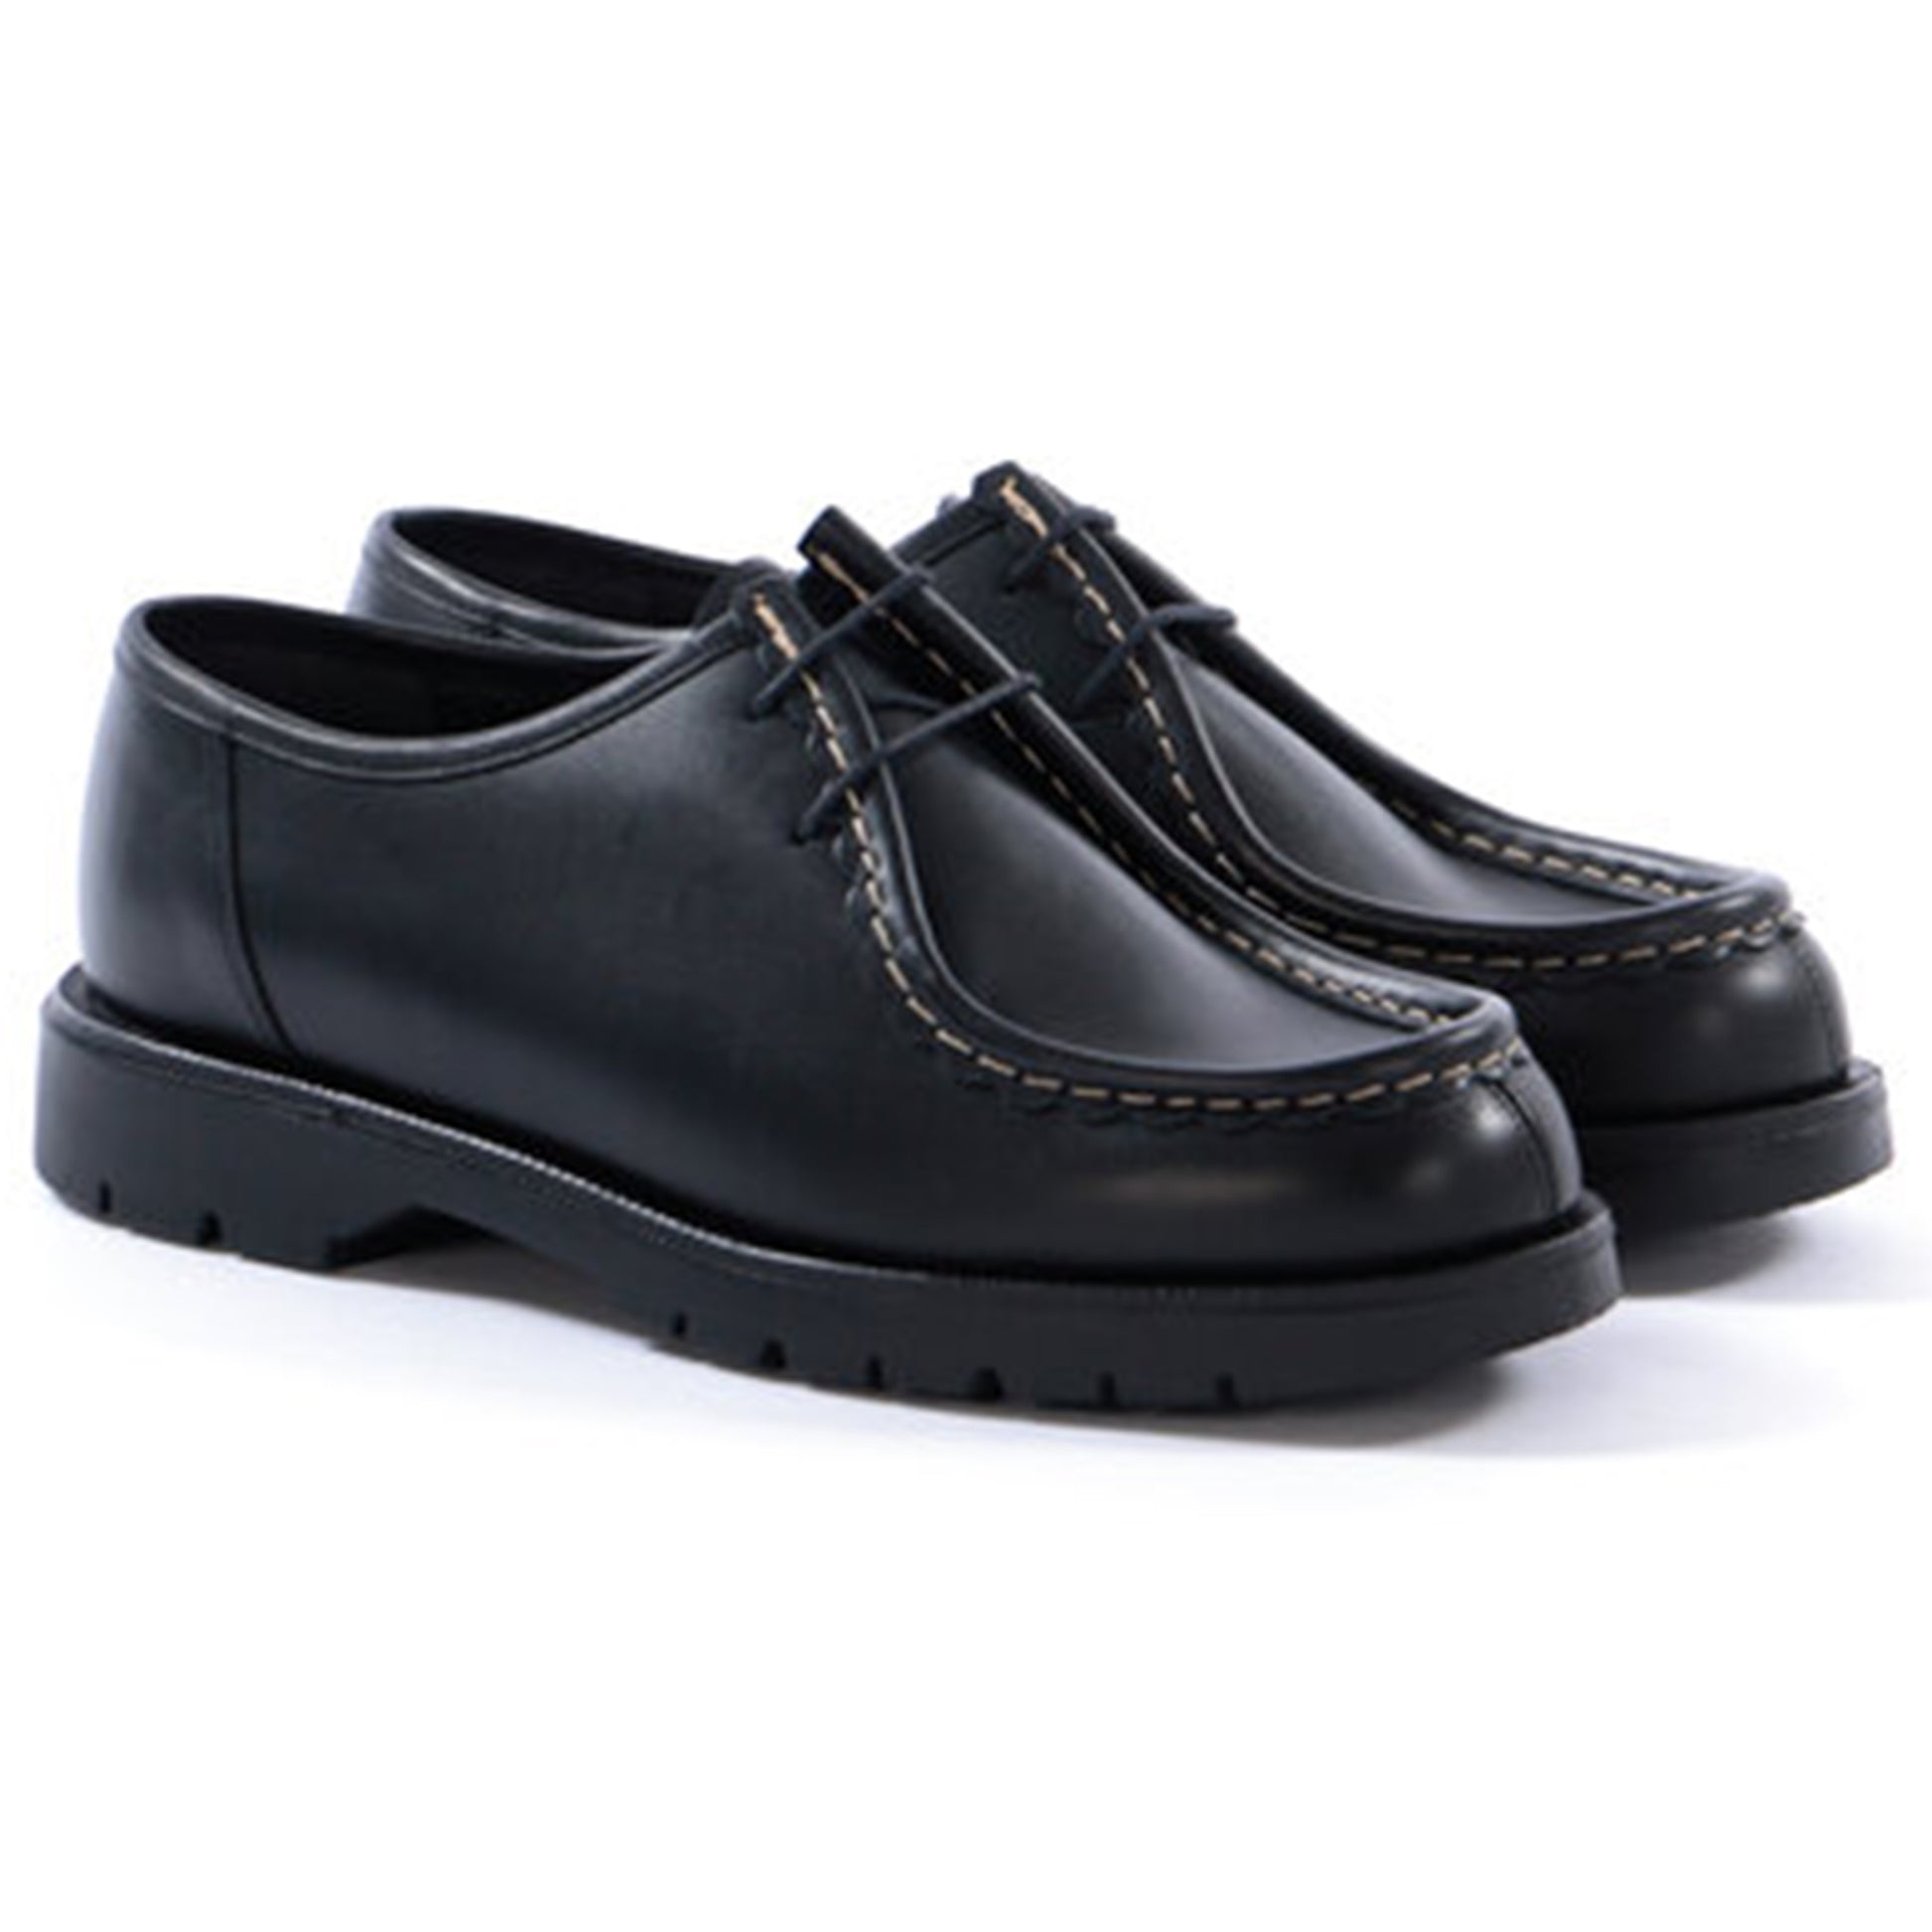 Kleman x Ecole de Pensée Dionee Derby Shoe Collaboration Footwear Black